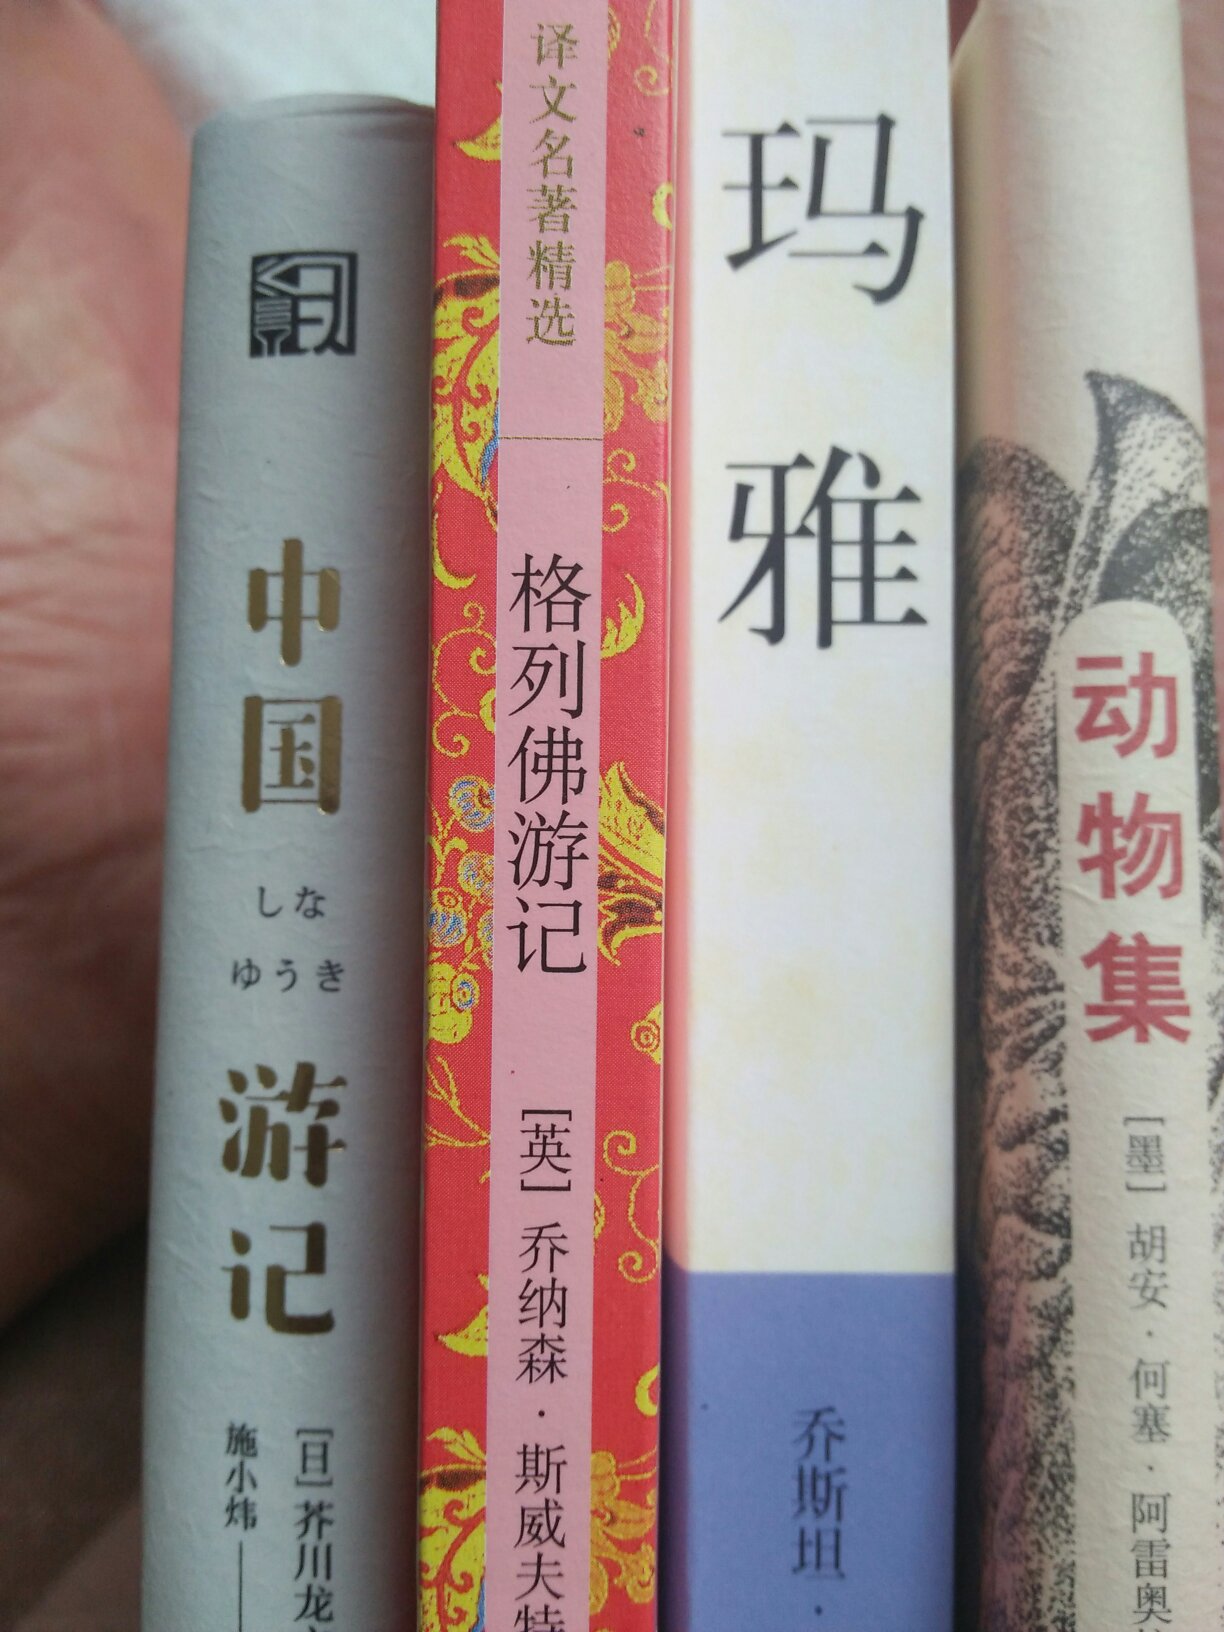 我喜欢作者芥川的书，道出了人性的复杂。